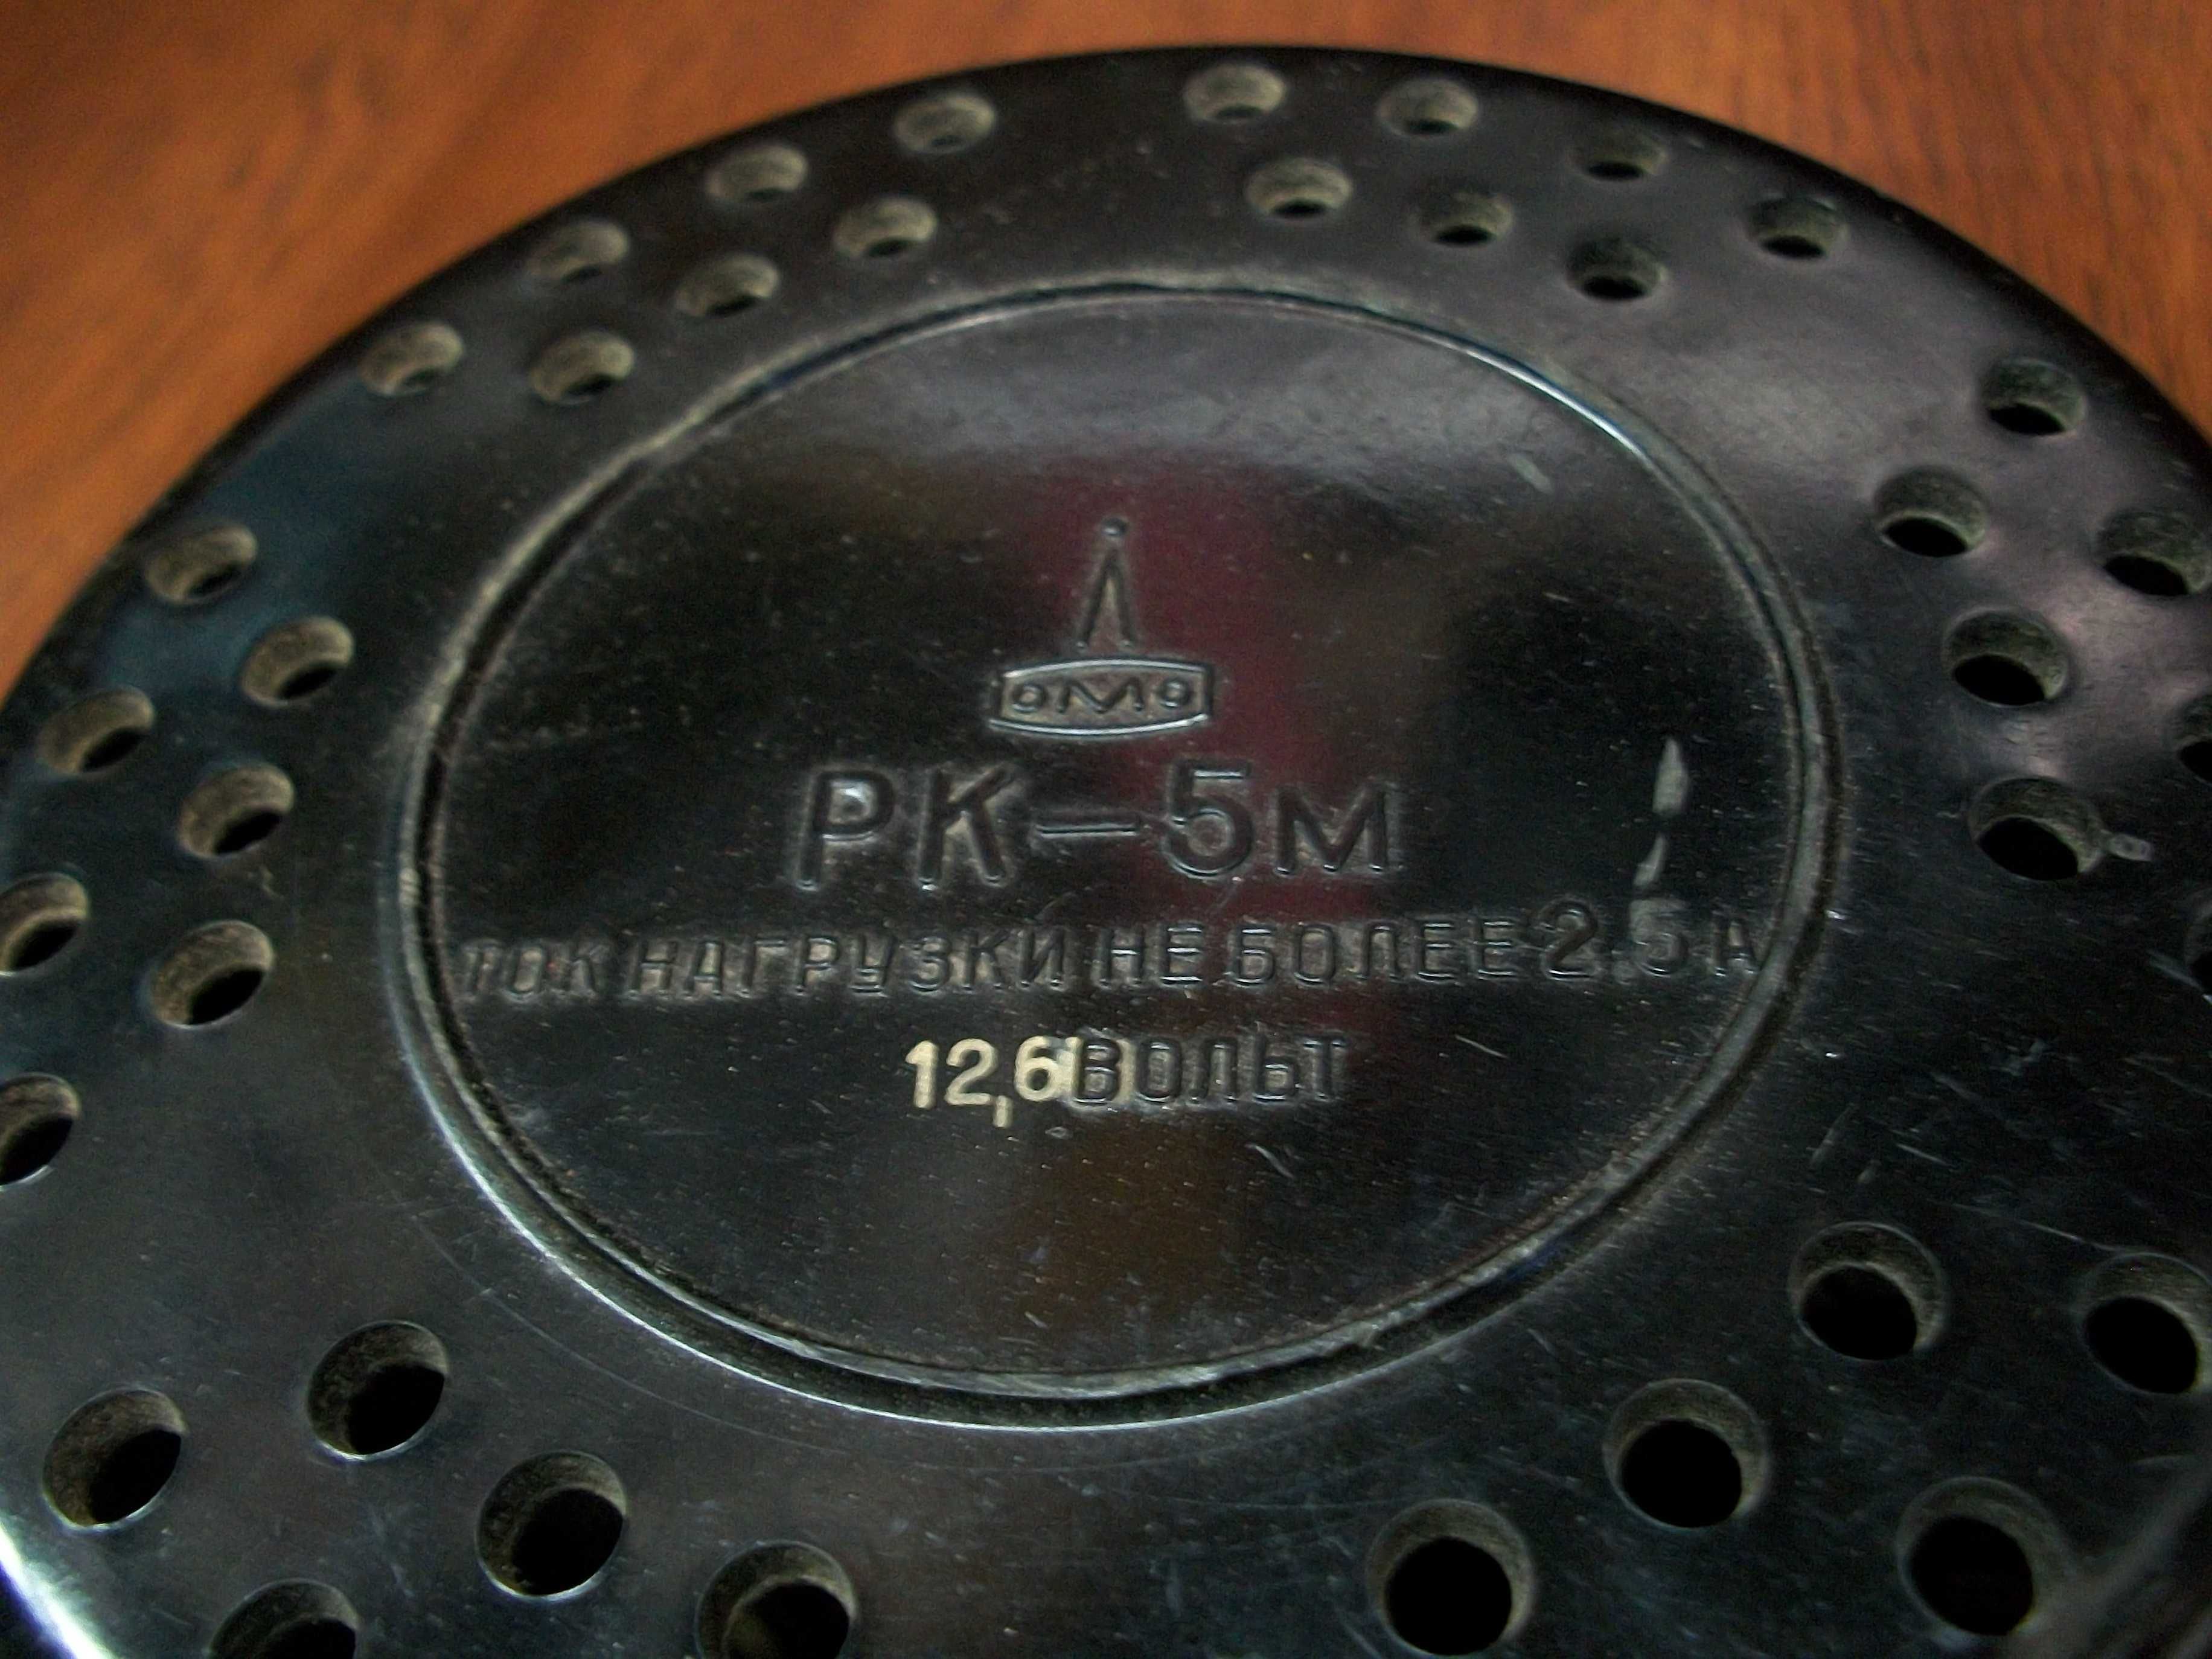 Трансформатор 12,6 В 2,5 Вт. РК-5М ОМО